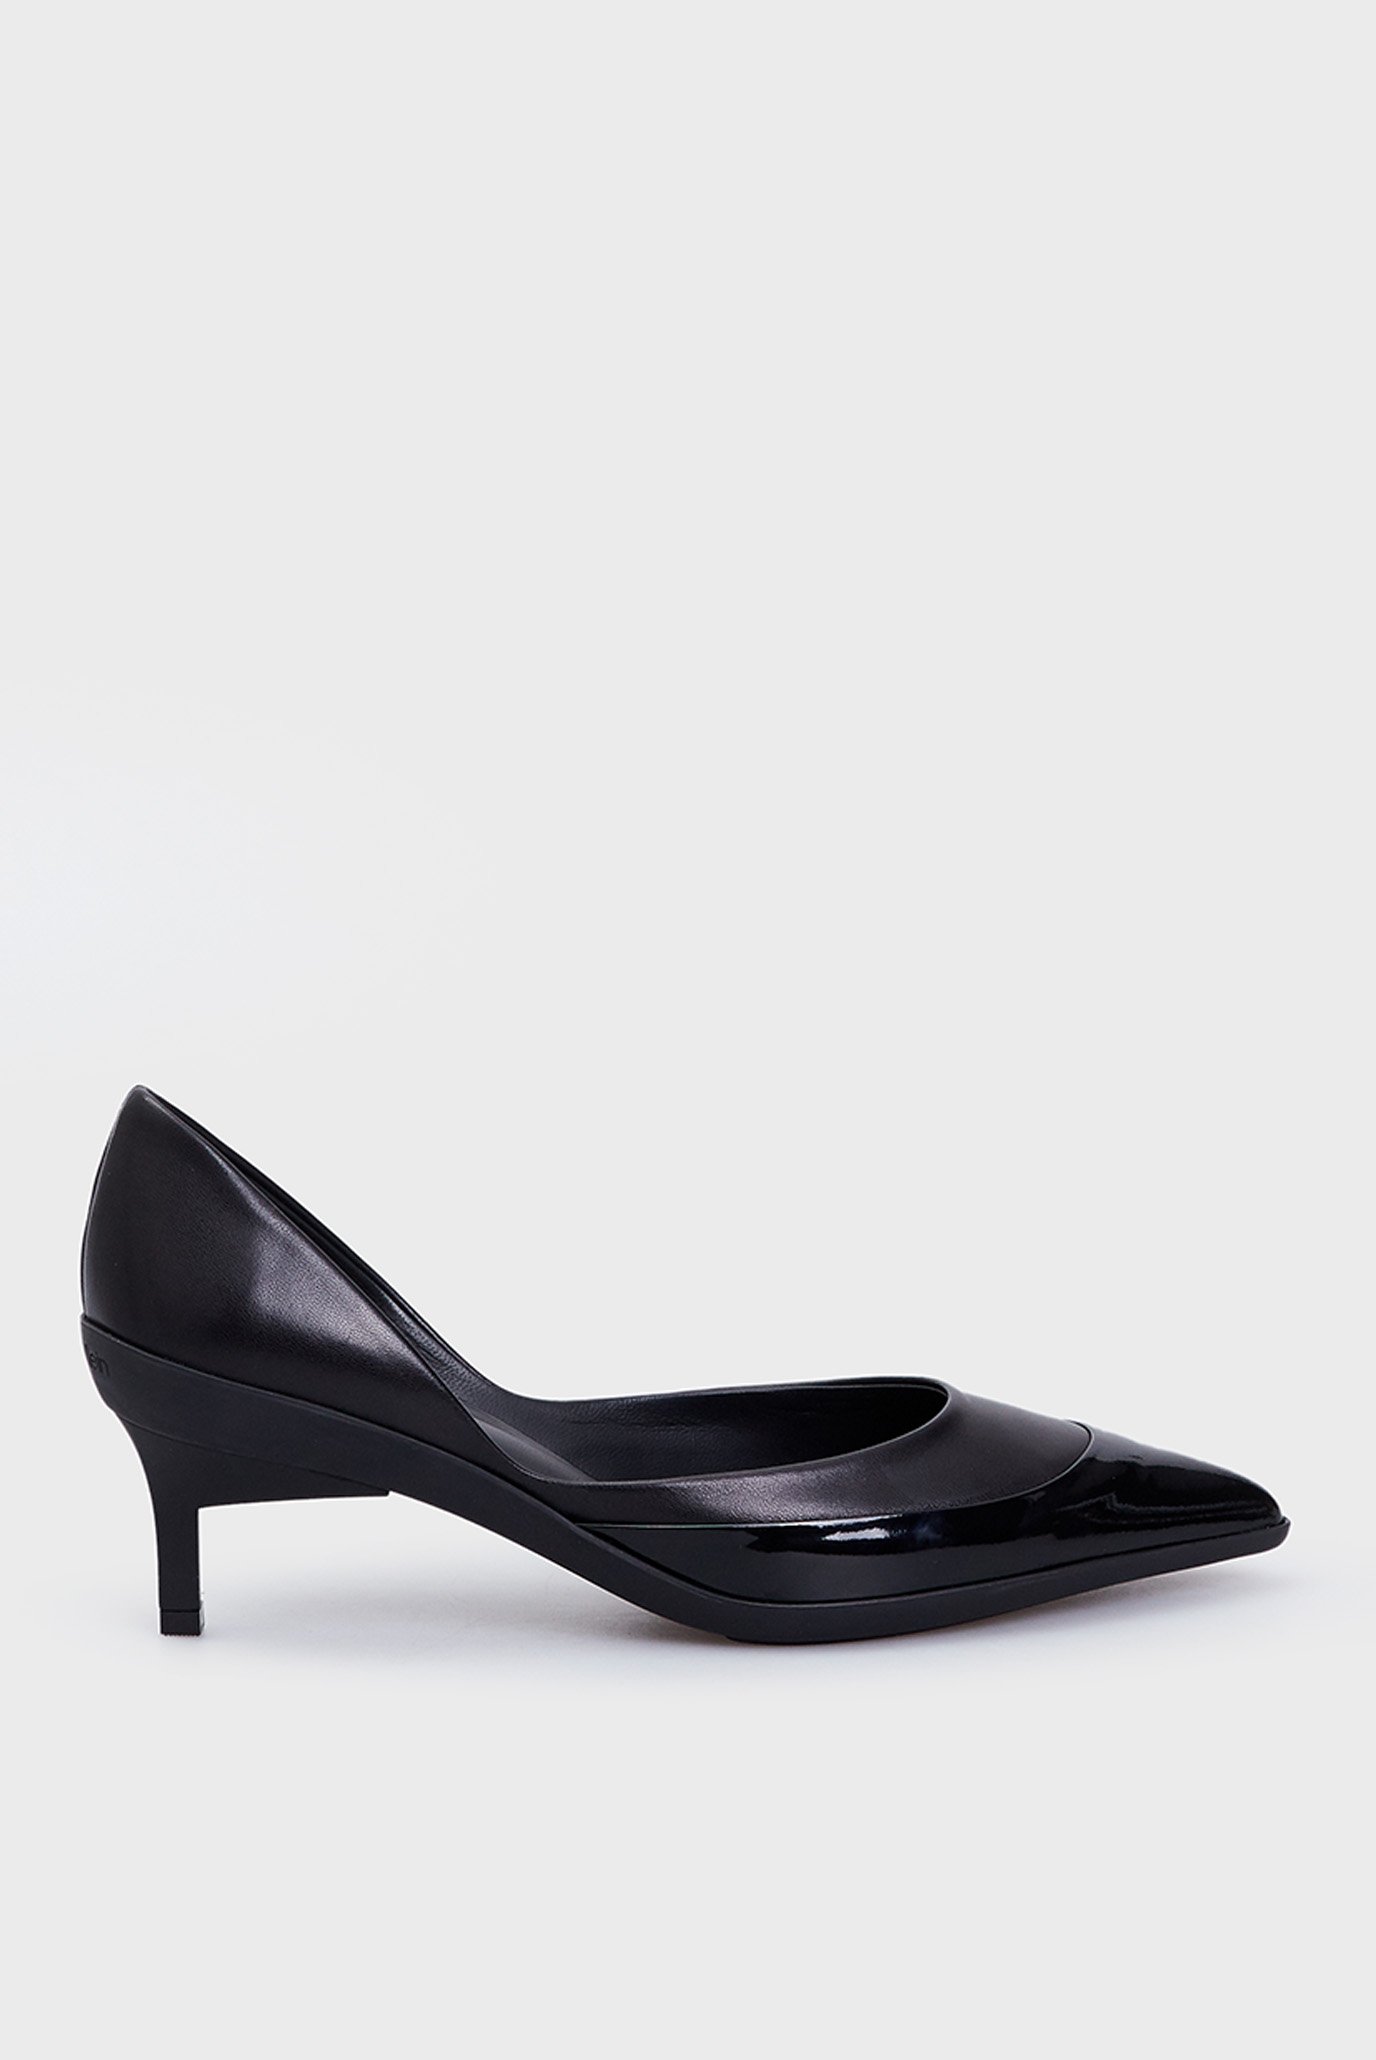 Жіночі чорні шкіряні туфлі D'ORSAY PUMP 45 MIX M 1